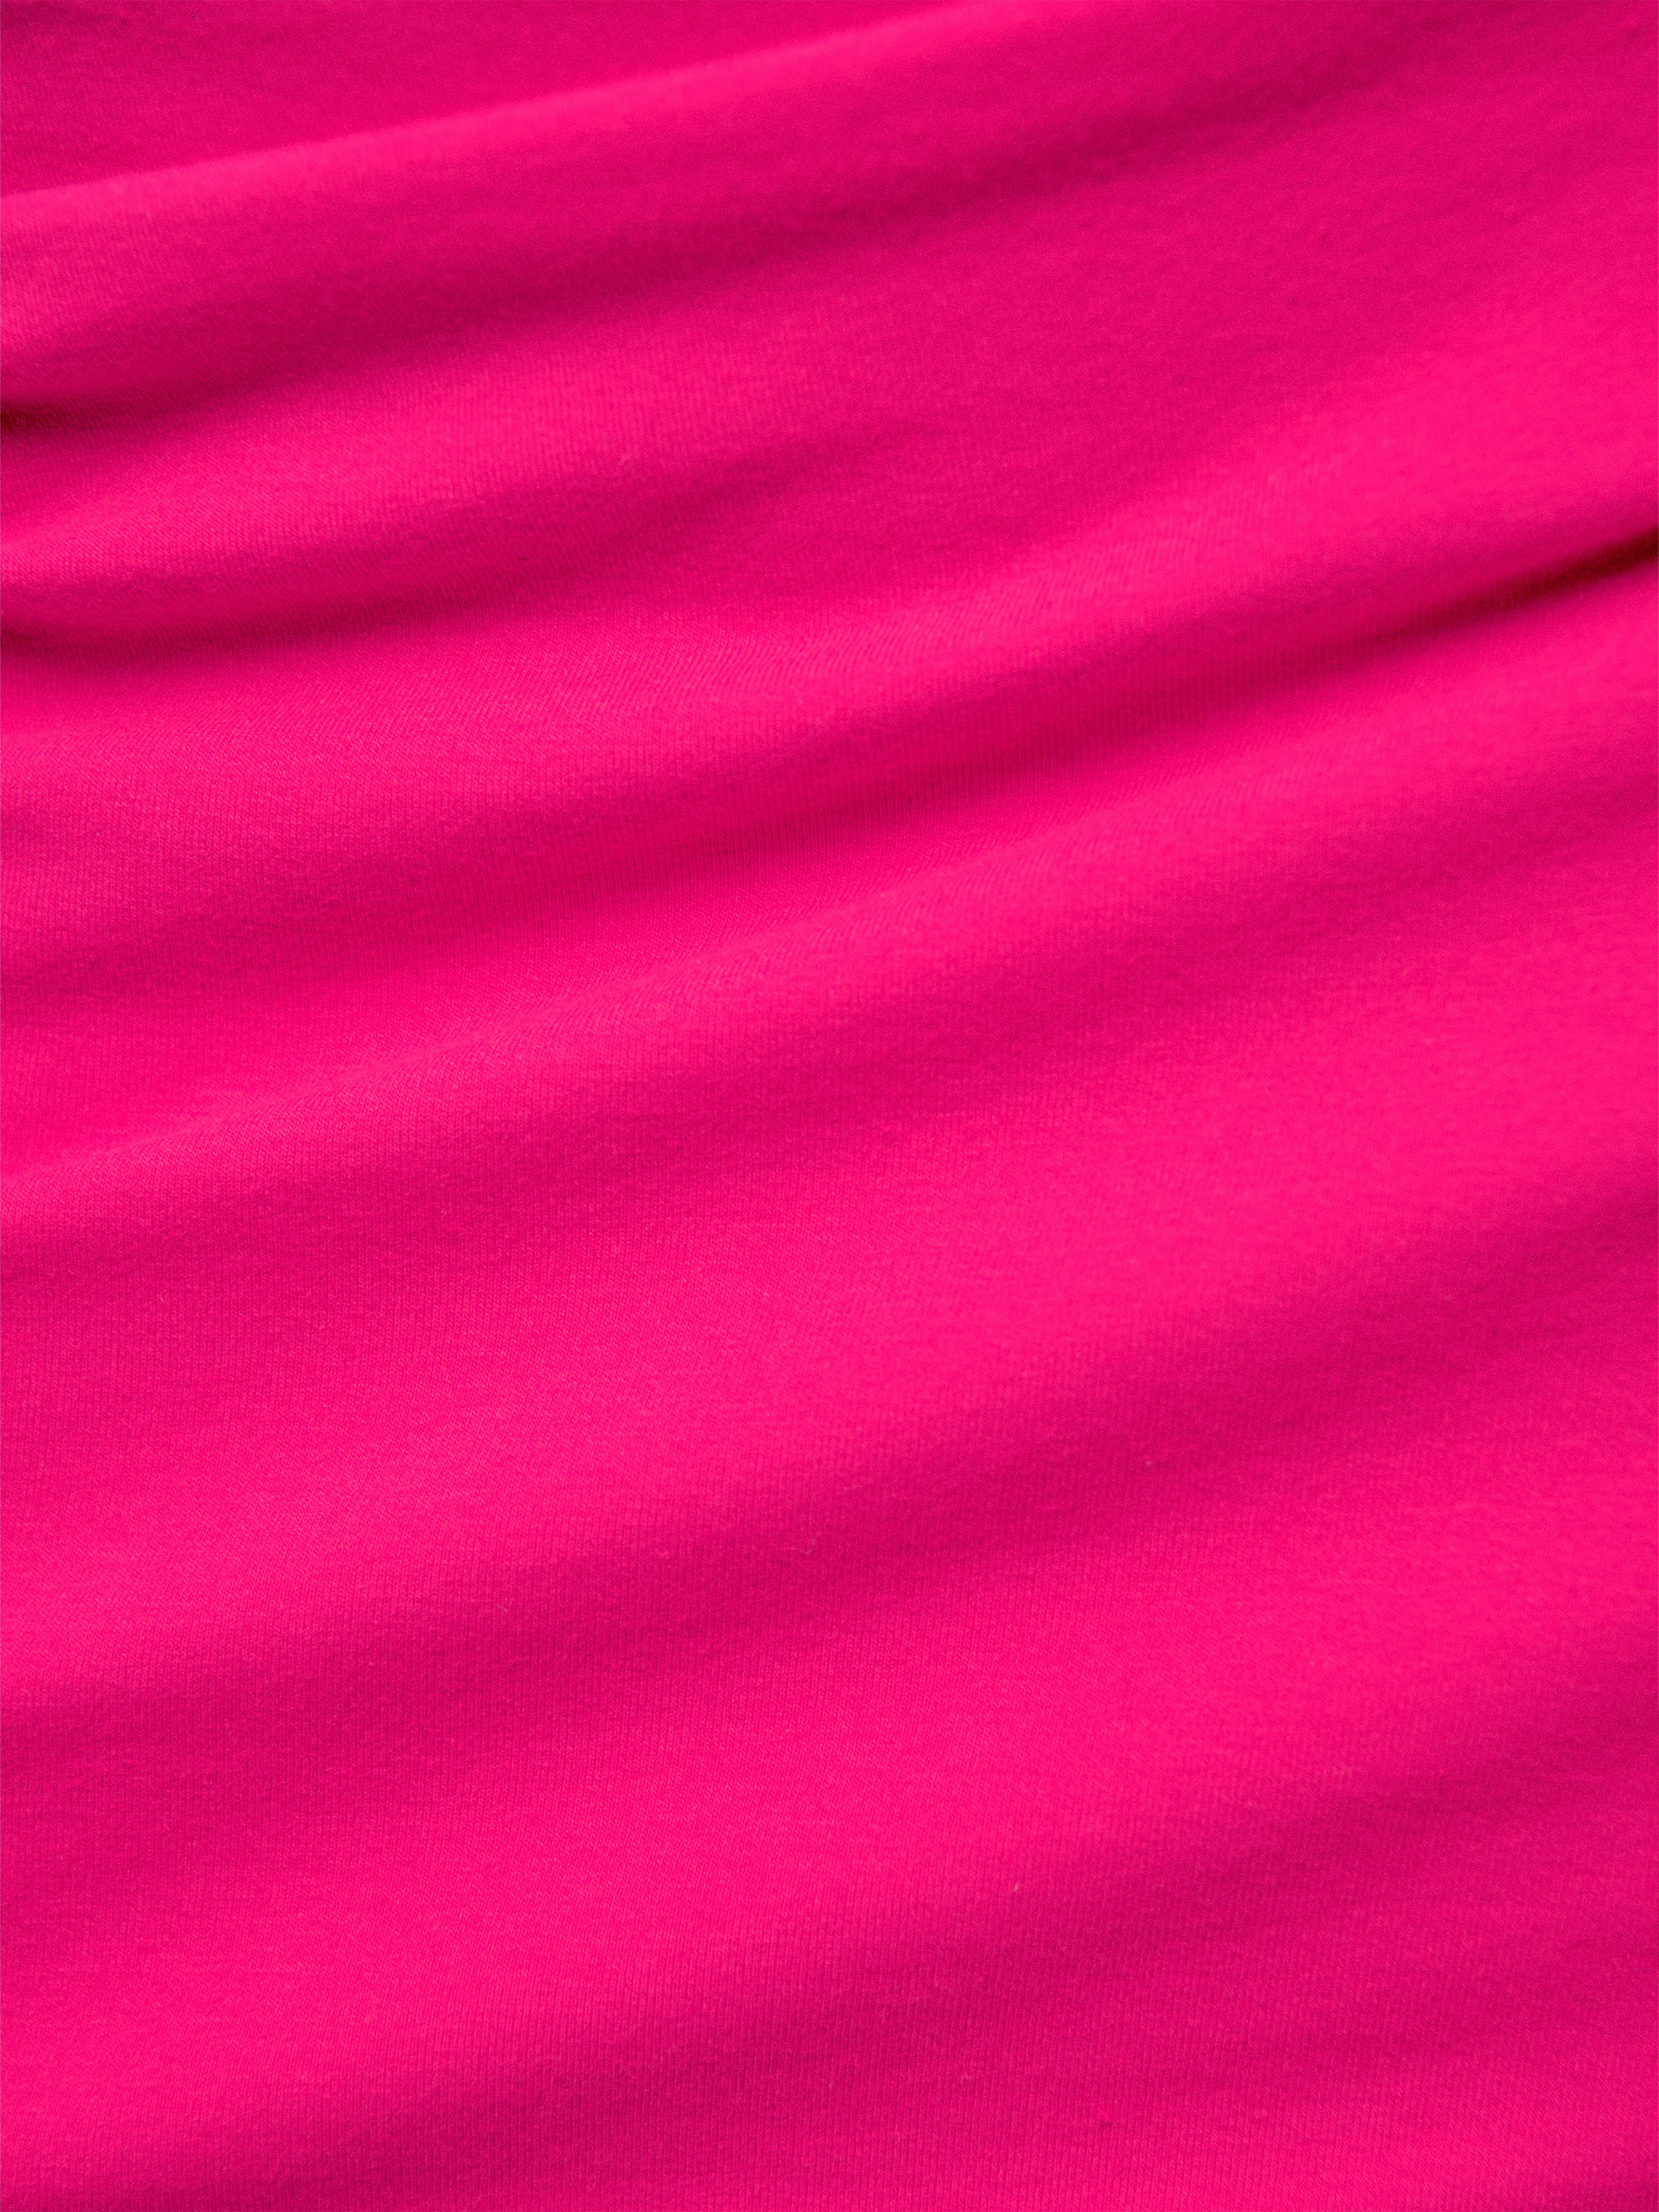 Alden Knit Dress, thumbnail image 6